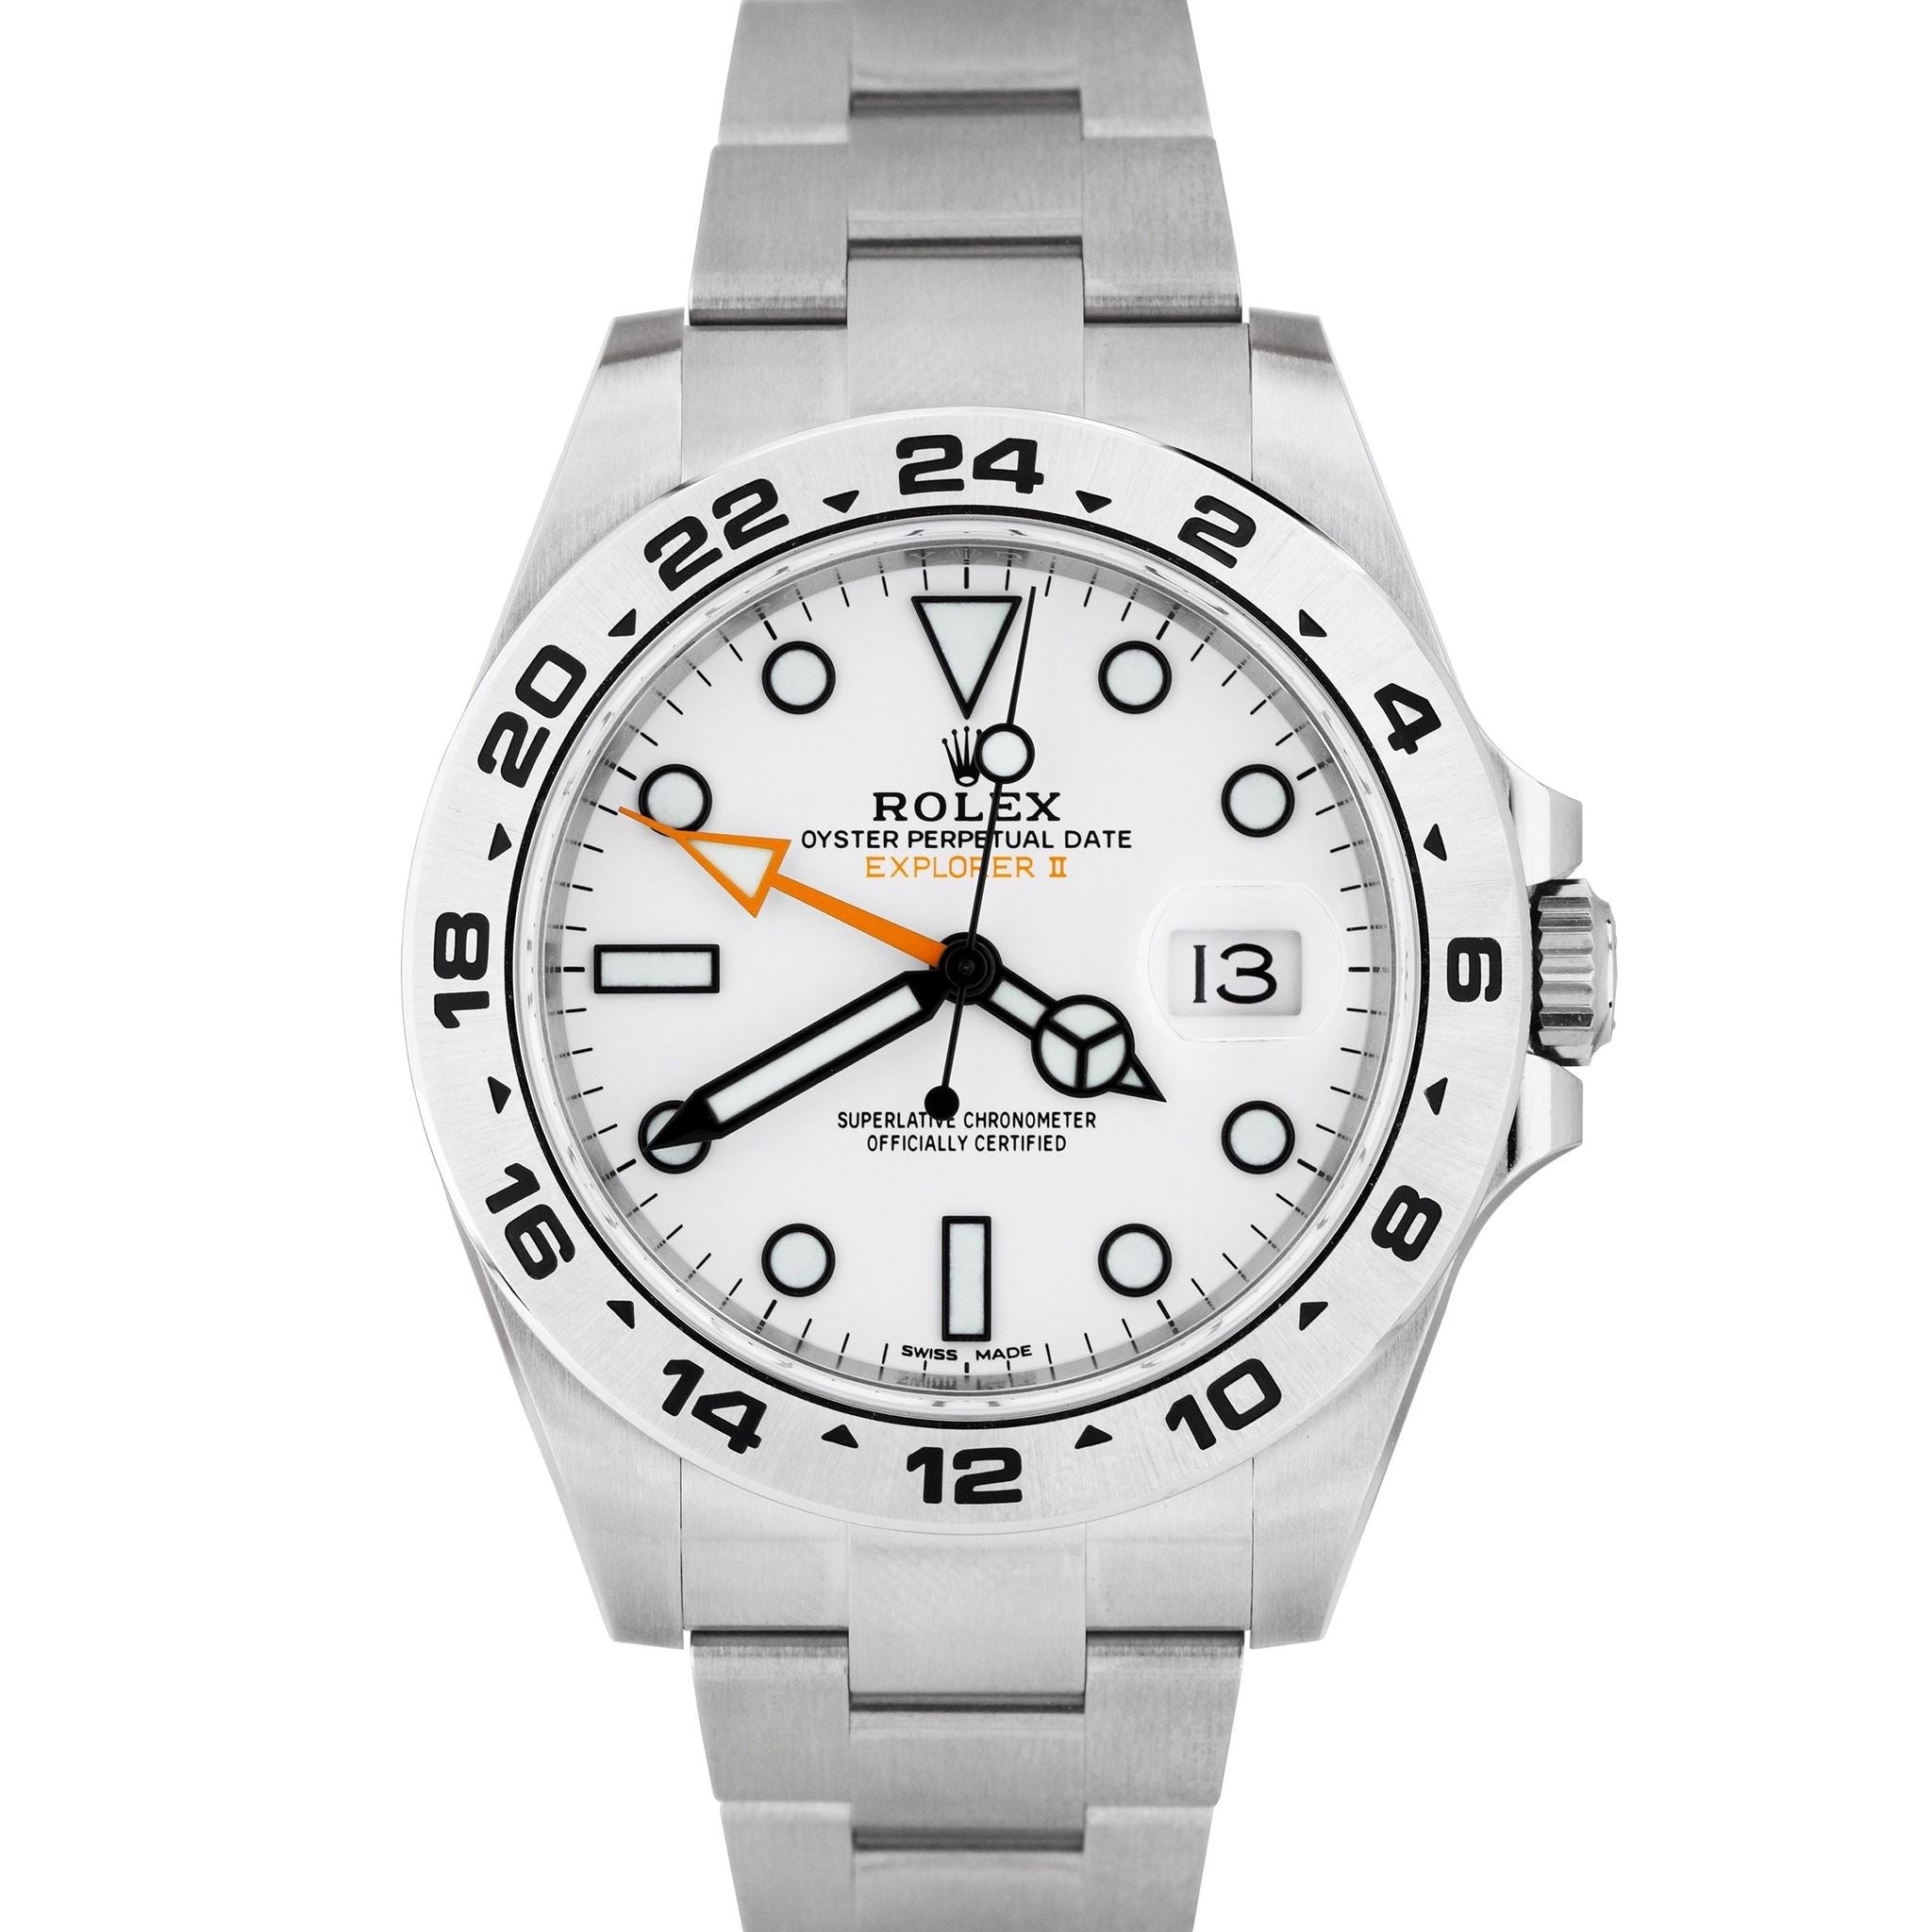 NEW DEC 2020 Rolex Explorer II 42mm White Orange Steel GMT Date Watch 216570